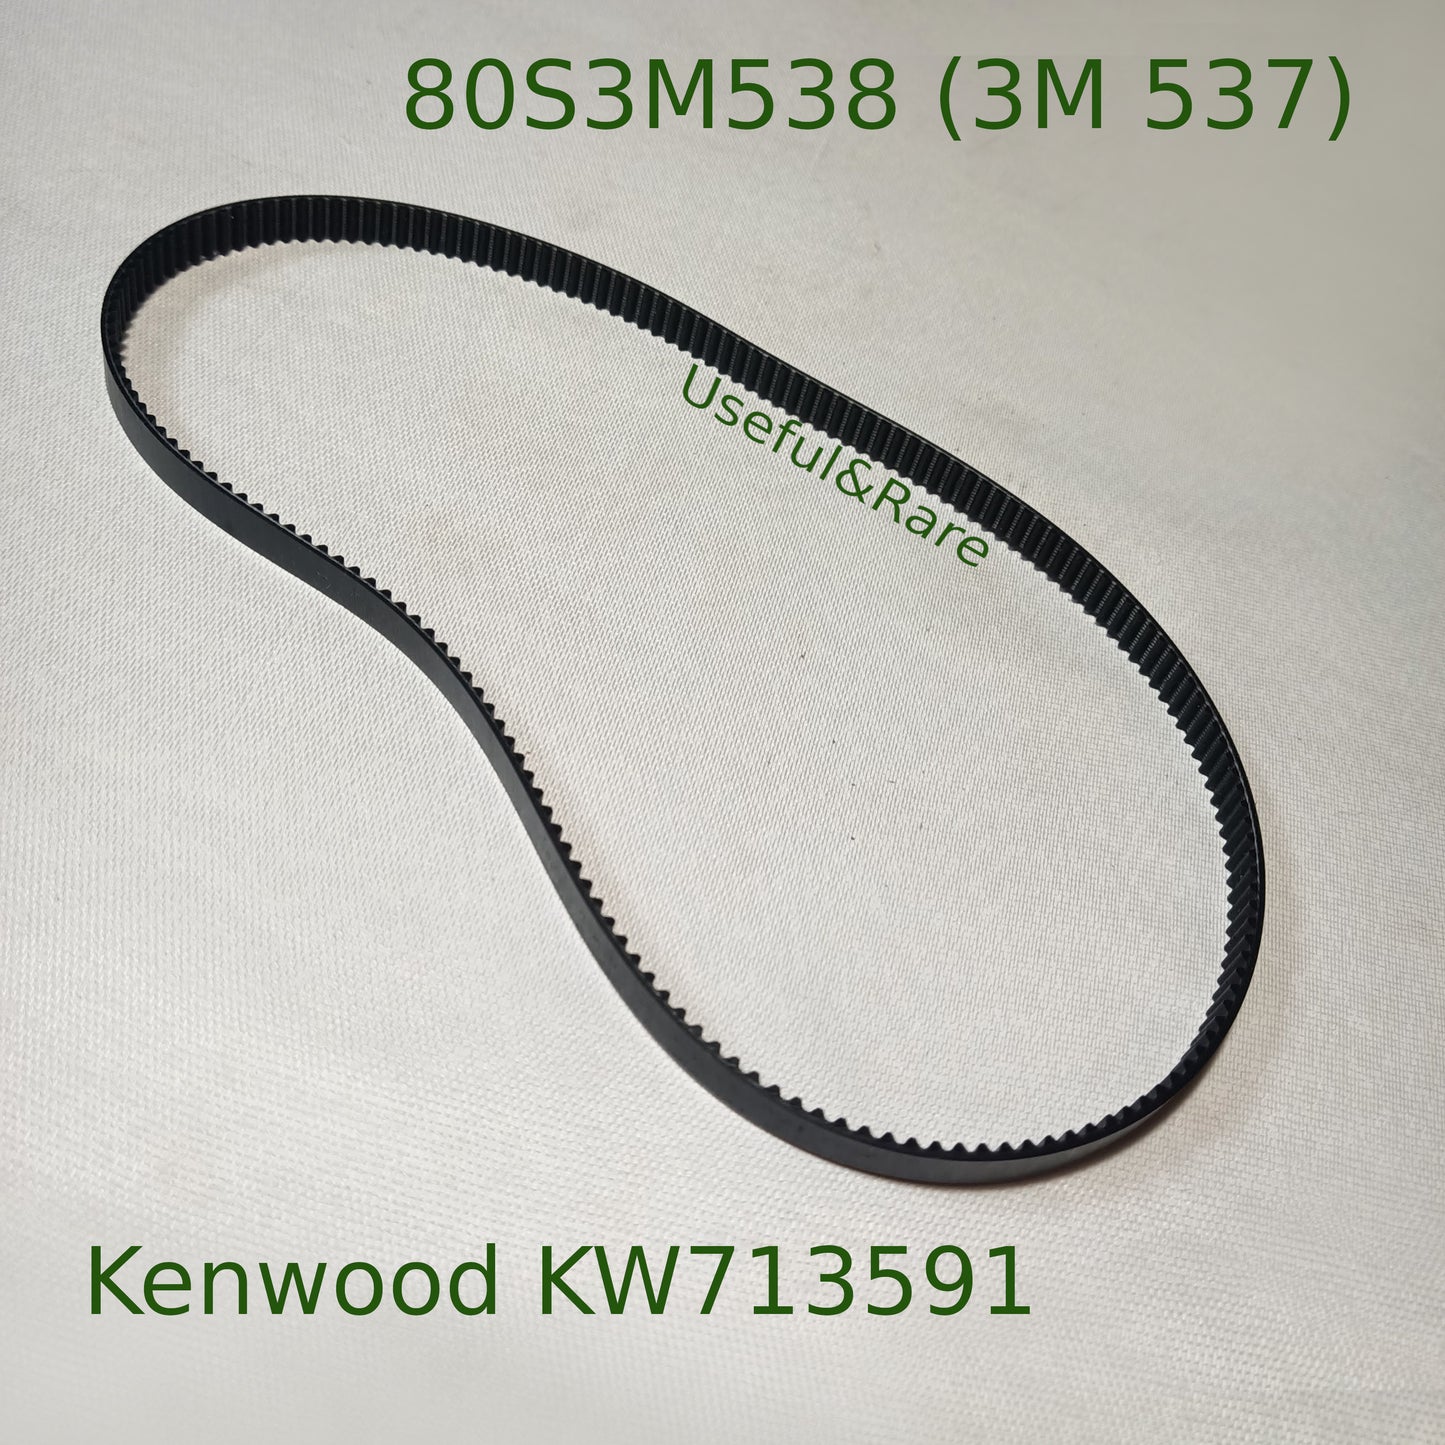 Kenwood KW713591 bread machine original belt 80S3M537/8